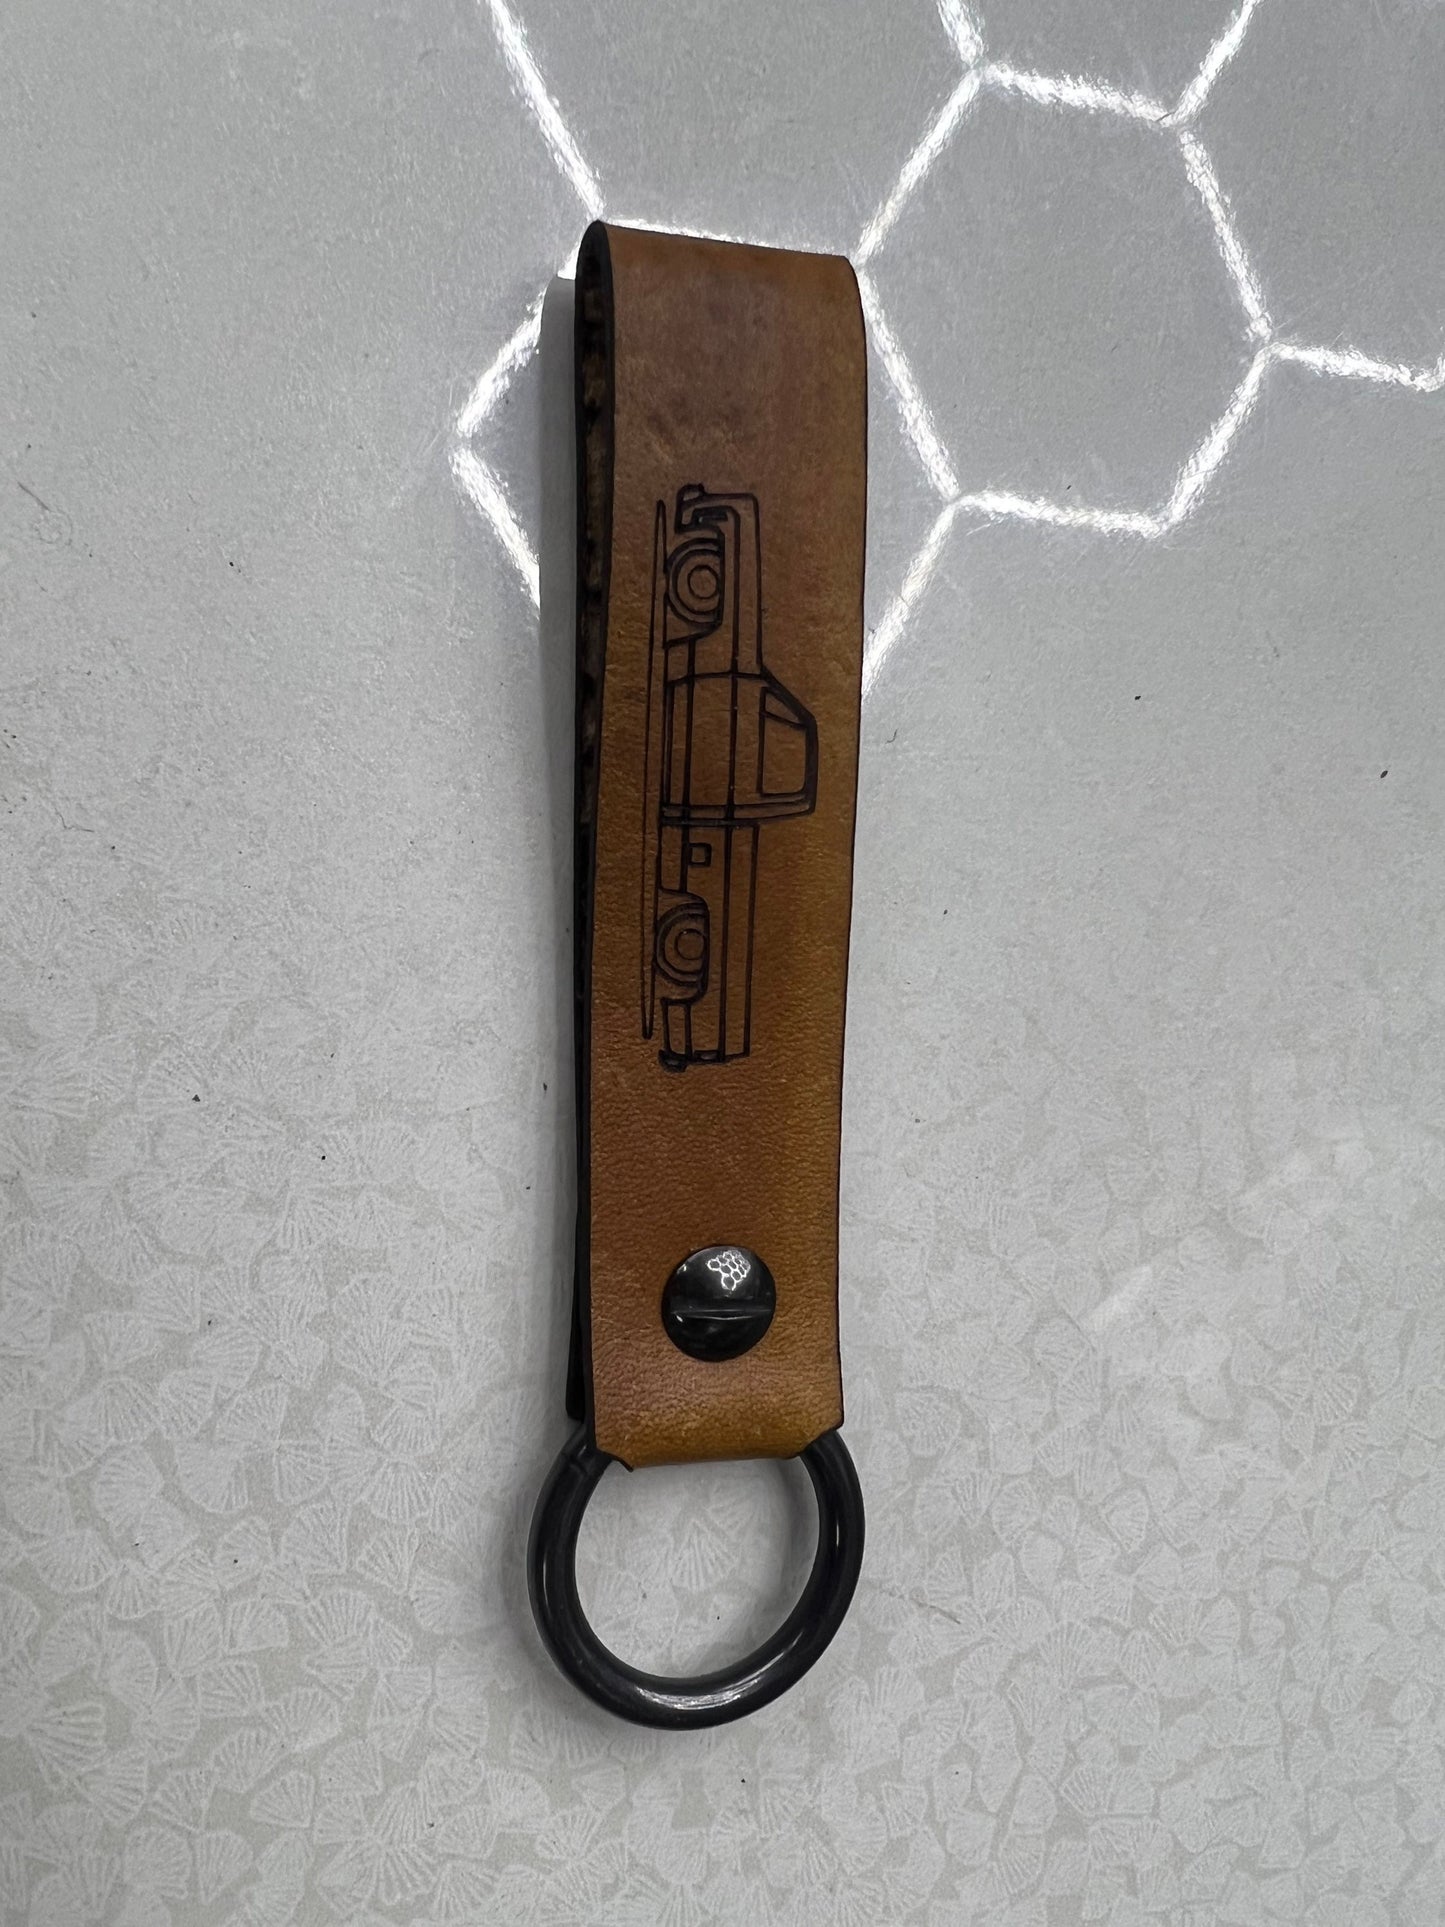 Chevy Silverado squarebody c10 Leather Strap Keychain